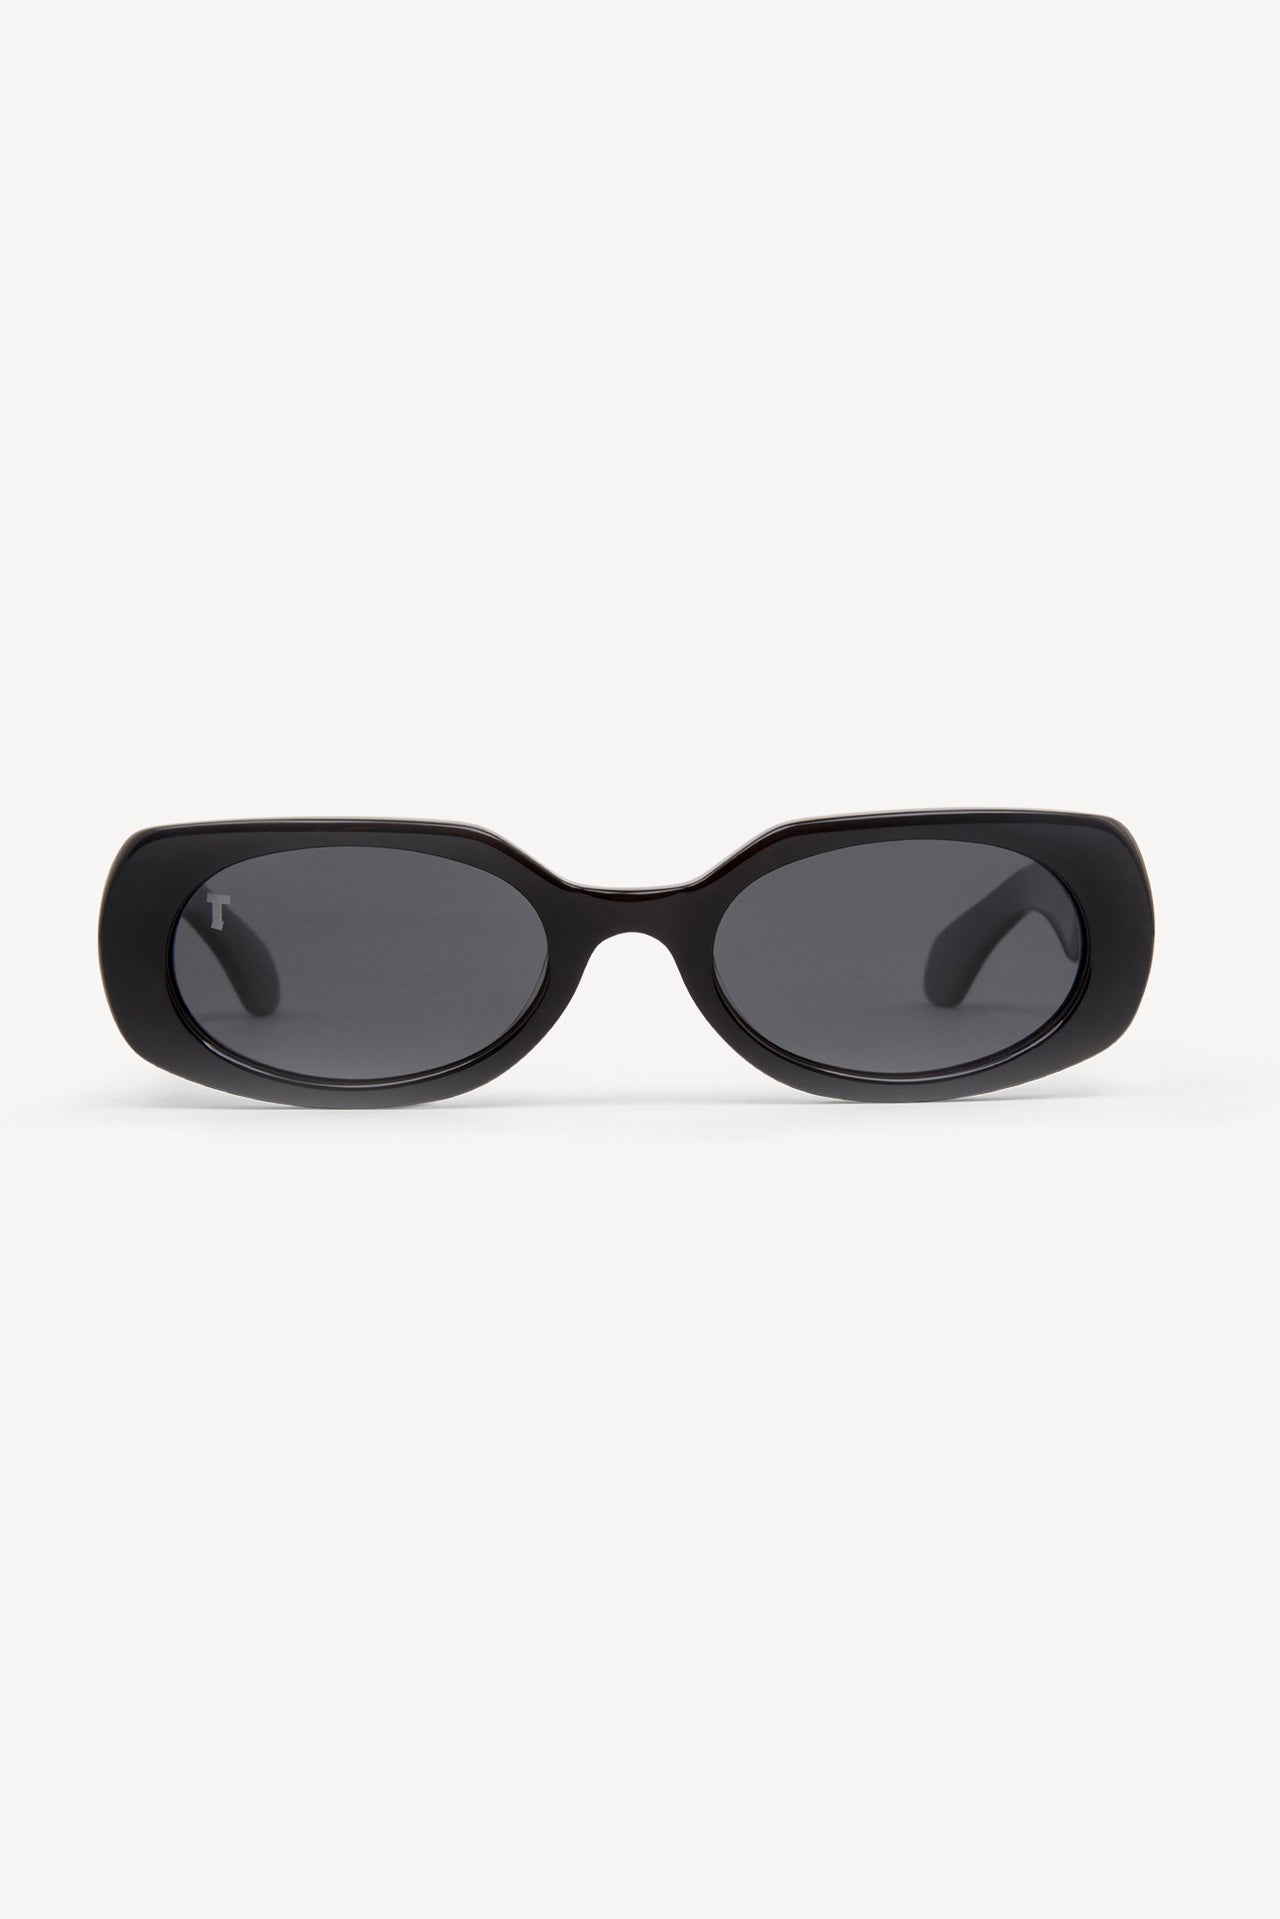 TOATIE Paris Rectangular Sunglasses BLACK/BLACK